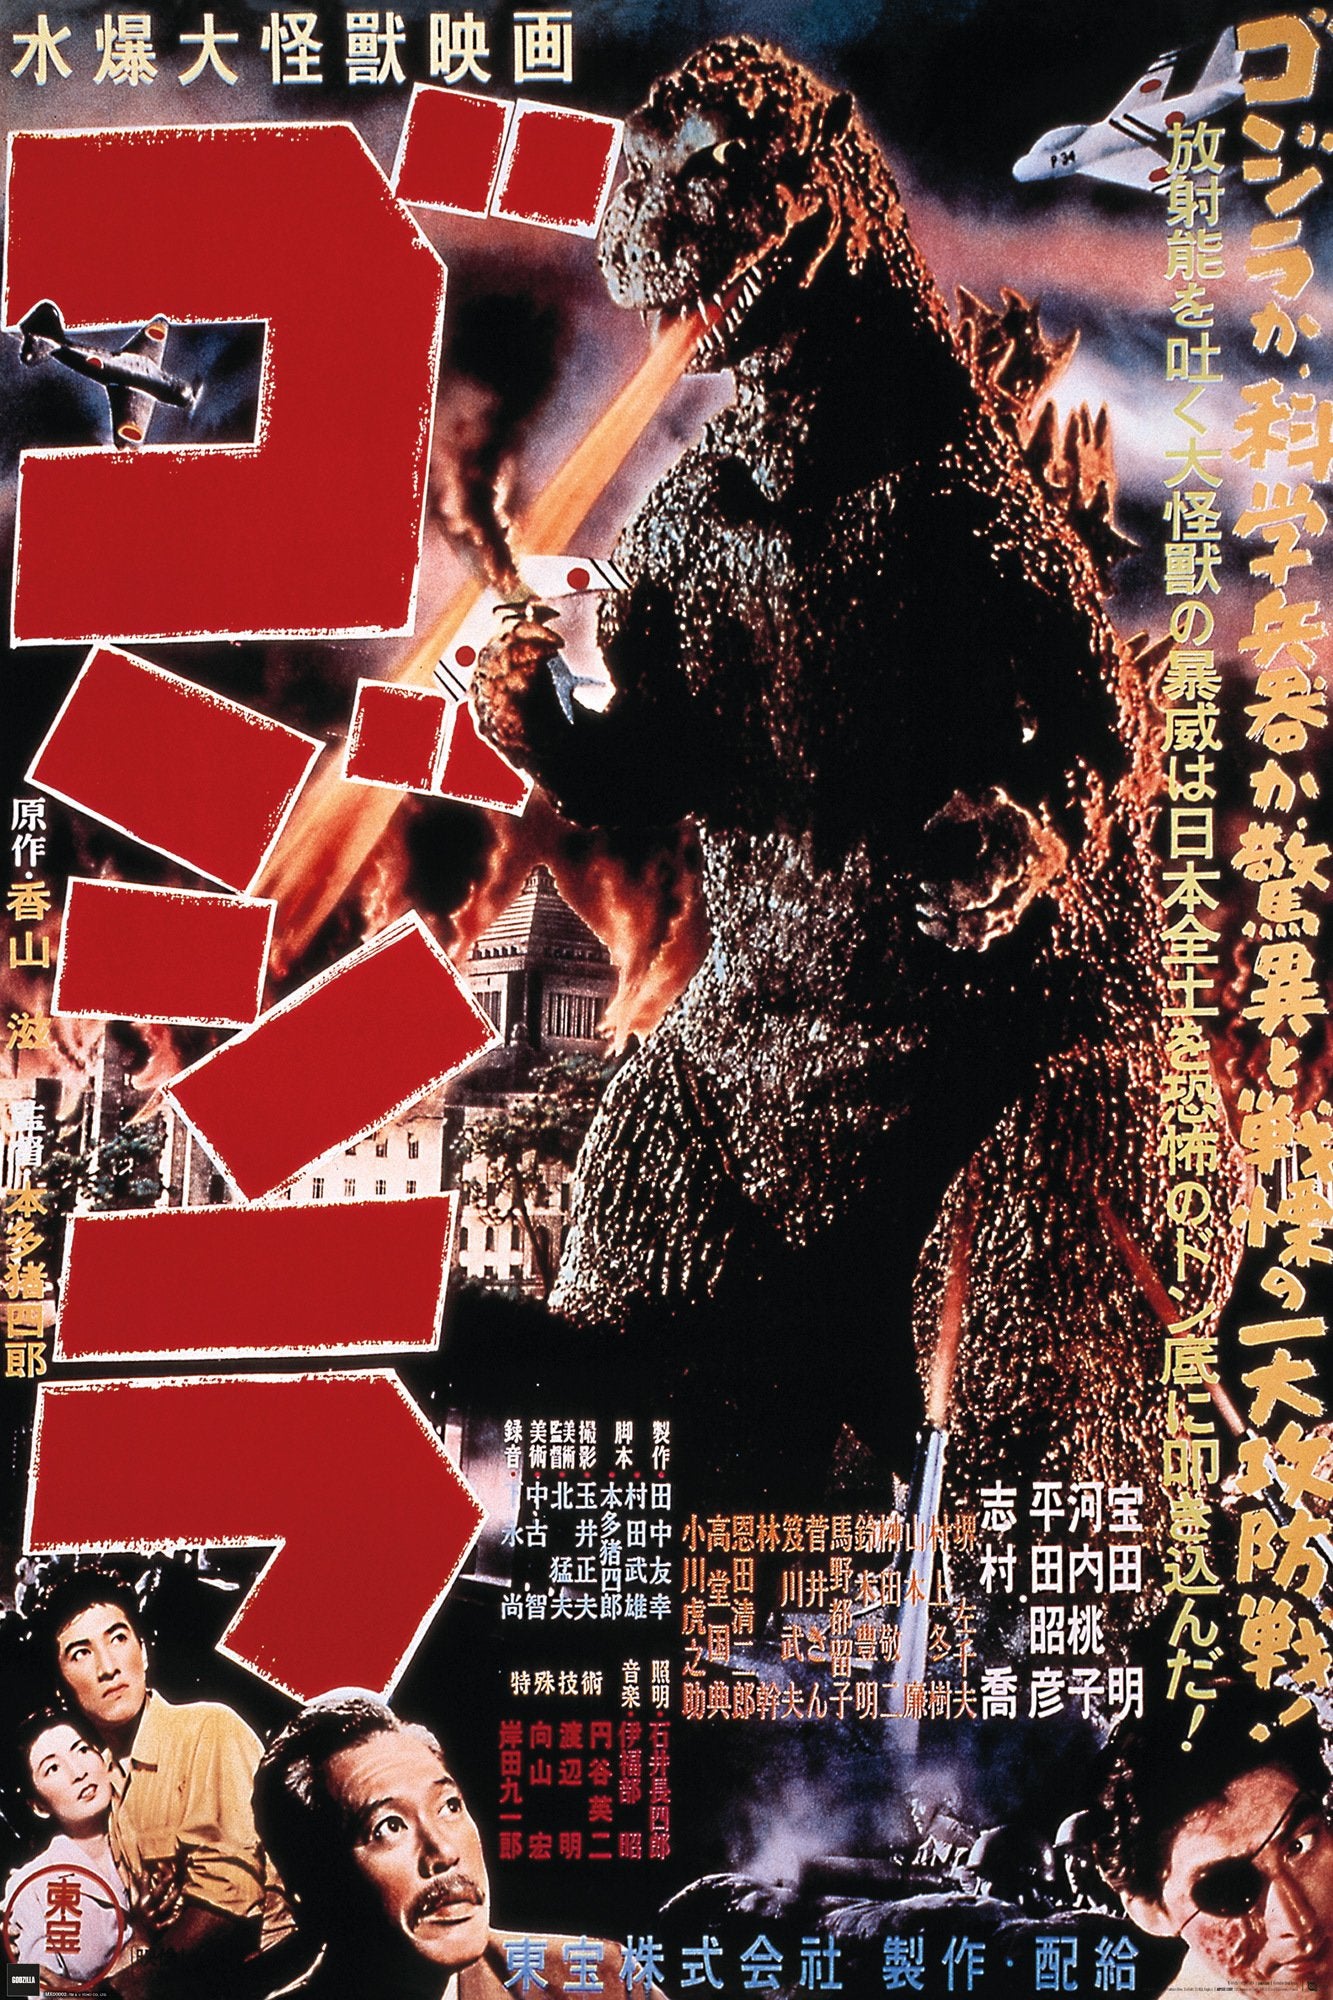 Godzilla (1954) Poster